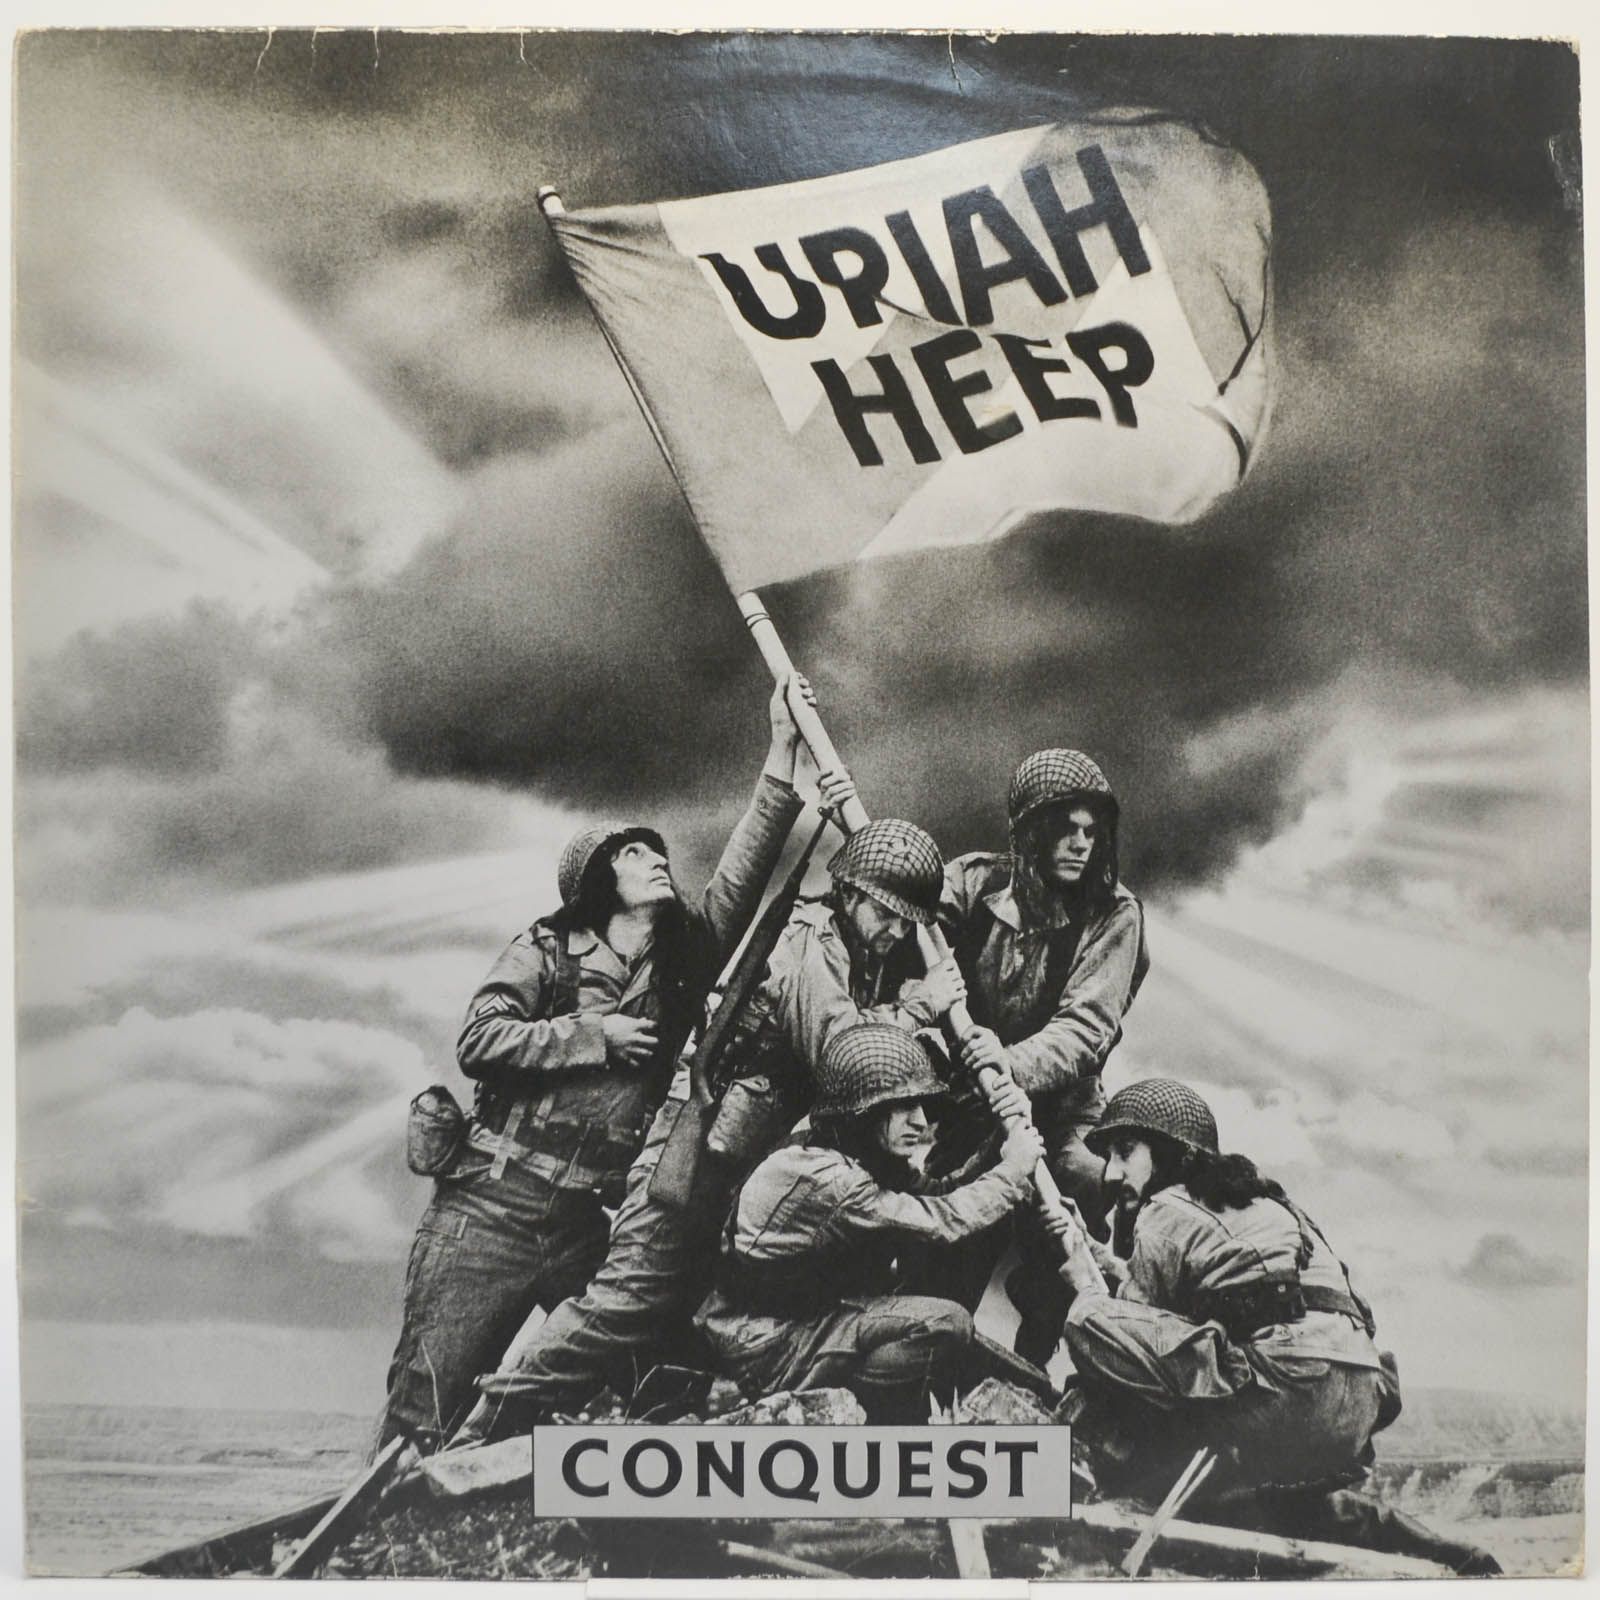 Uriah Heep — Conquest, 1980